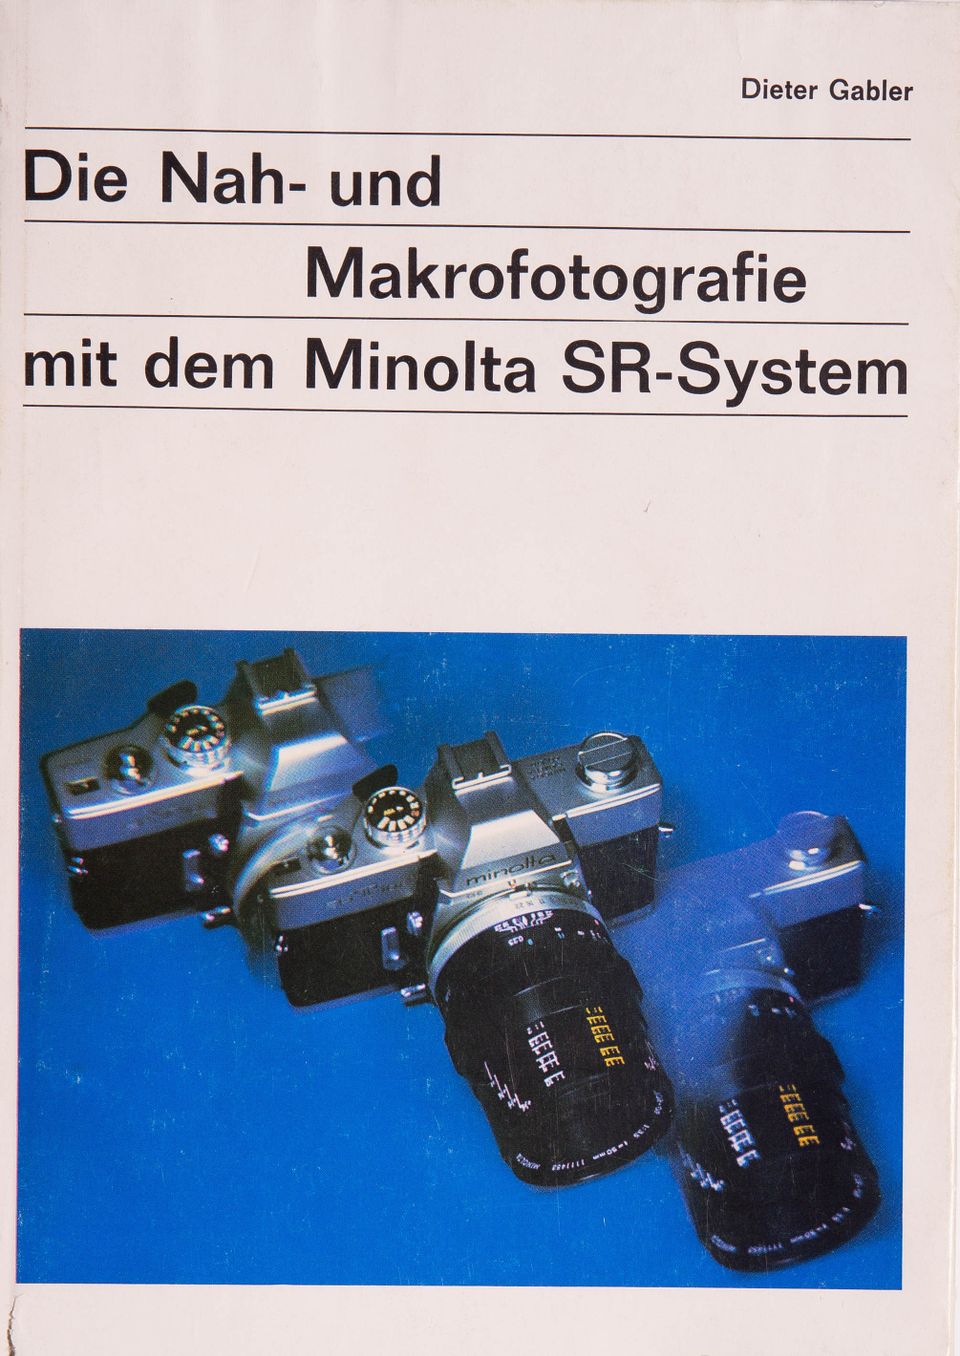 Die Nah- und Makrofotografie mit dem Minolta SR-System